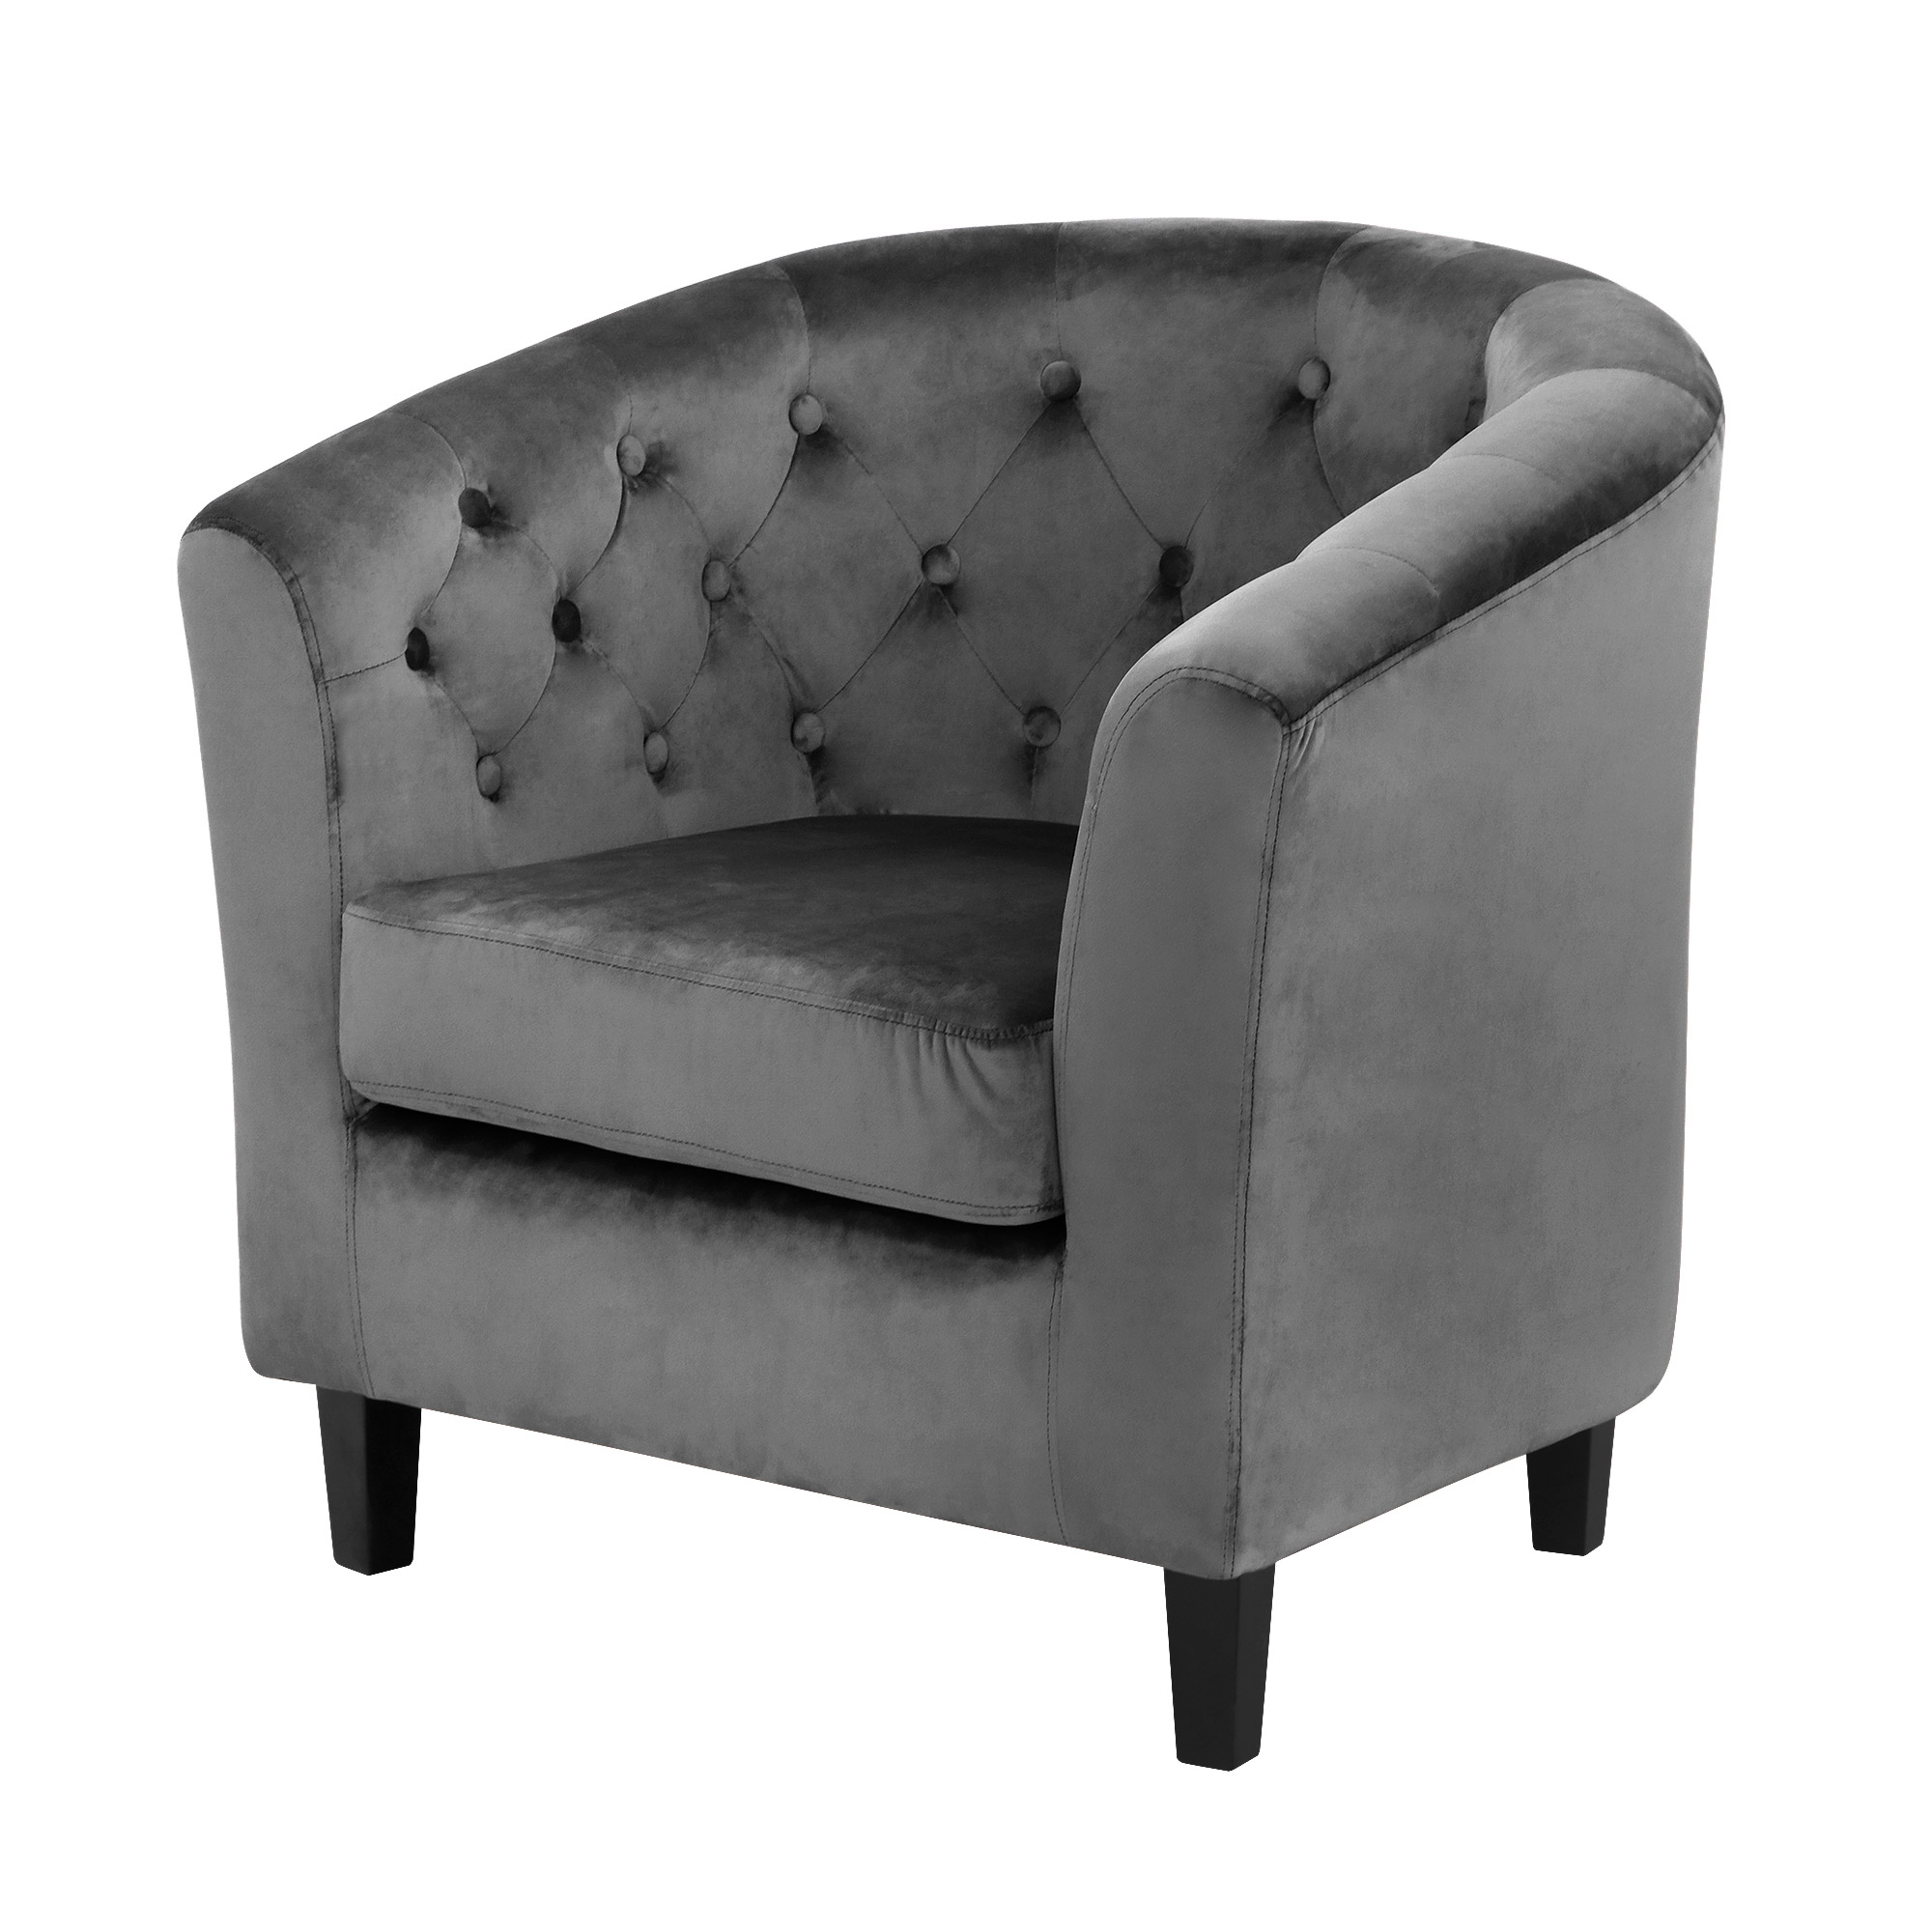 Кресло Shanshi Оливия серое 72x63x71cm, цвет серый - фото 1